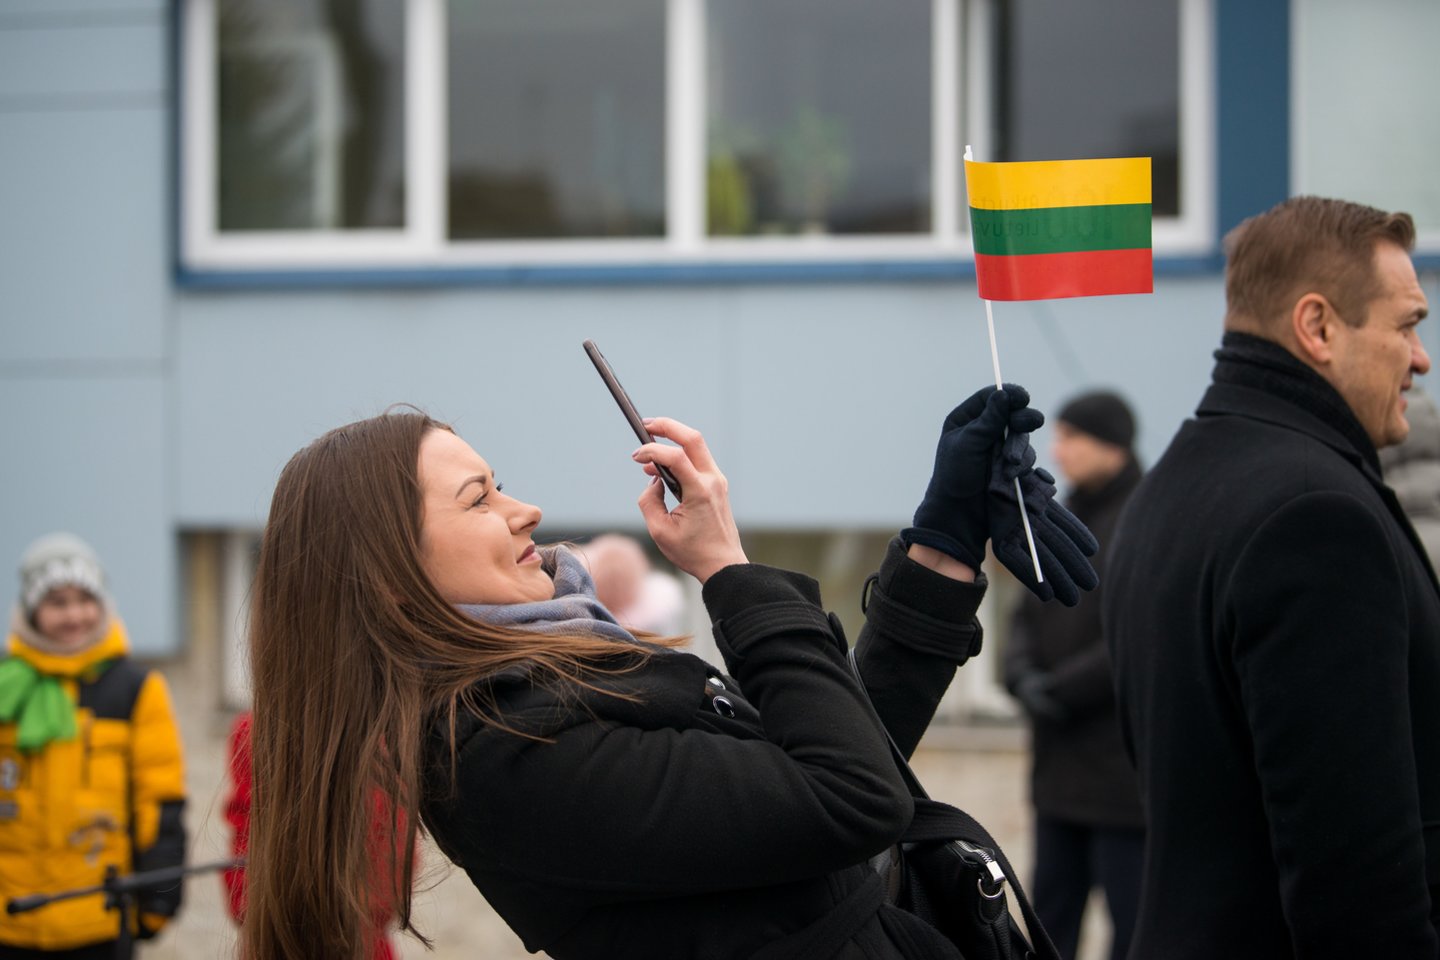 Registrų centro specialistų atlikta naujausia Gyventojųregistro analizė atskleidžia, kad balandžio 1 dieną savo gyvenamąją vietą Lietuvoje buvo deklaravę 3,026 mln. gyventojų. Tuo metu Lietuvoje yra 8 savivaldybės, kuriose gyventojų skaičius perketvirtį išaugo.  <br>J.Stacevičiaus nuotr.